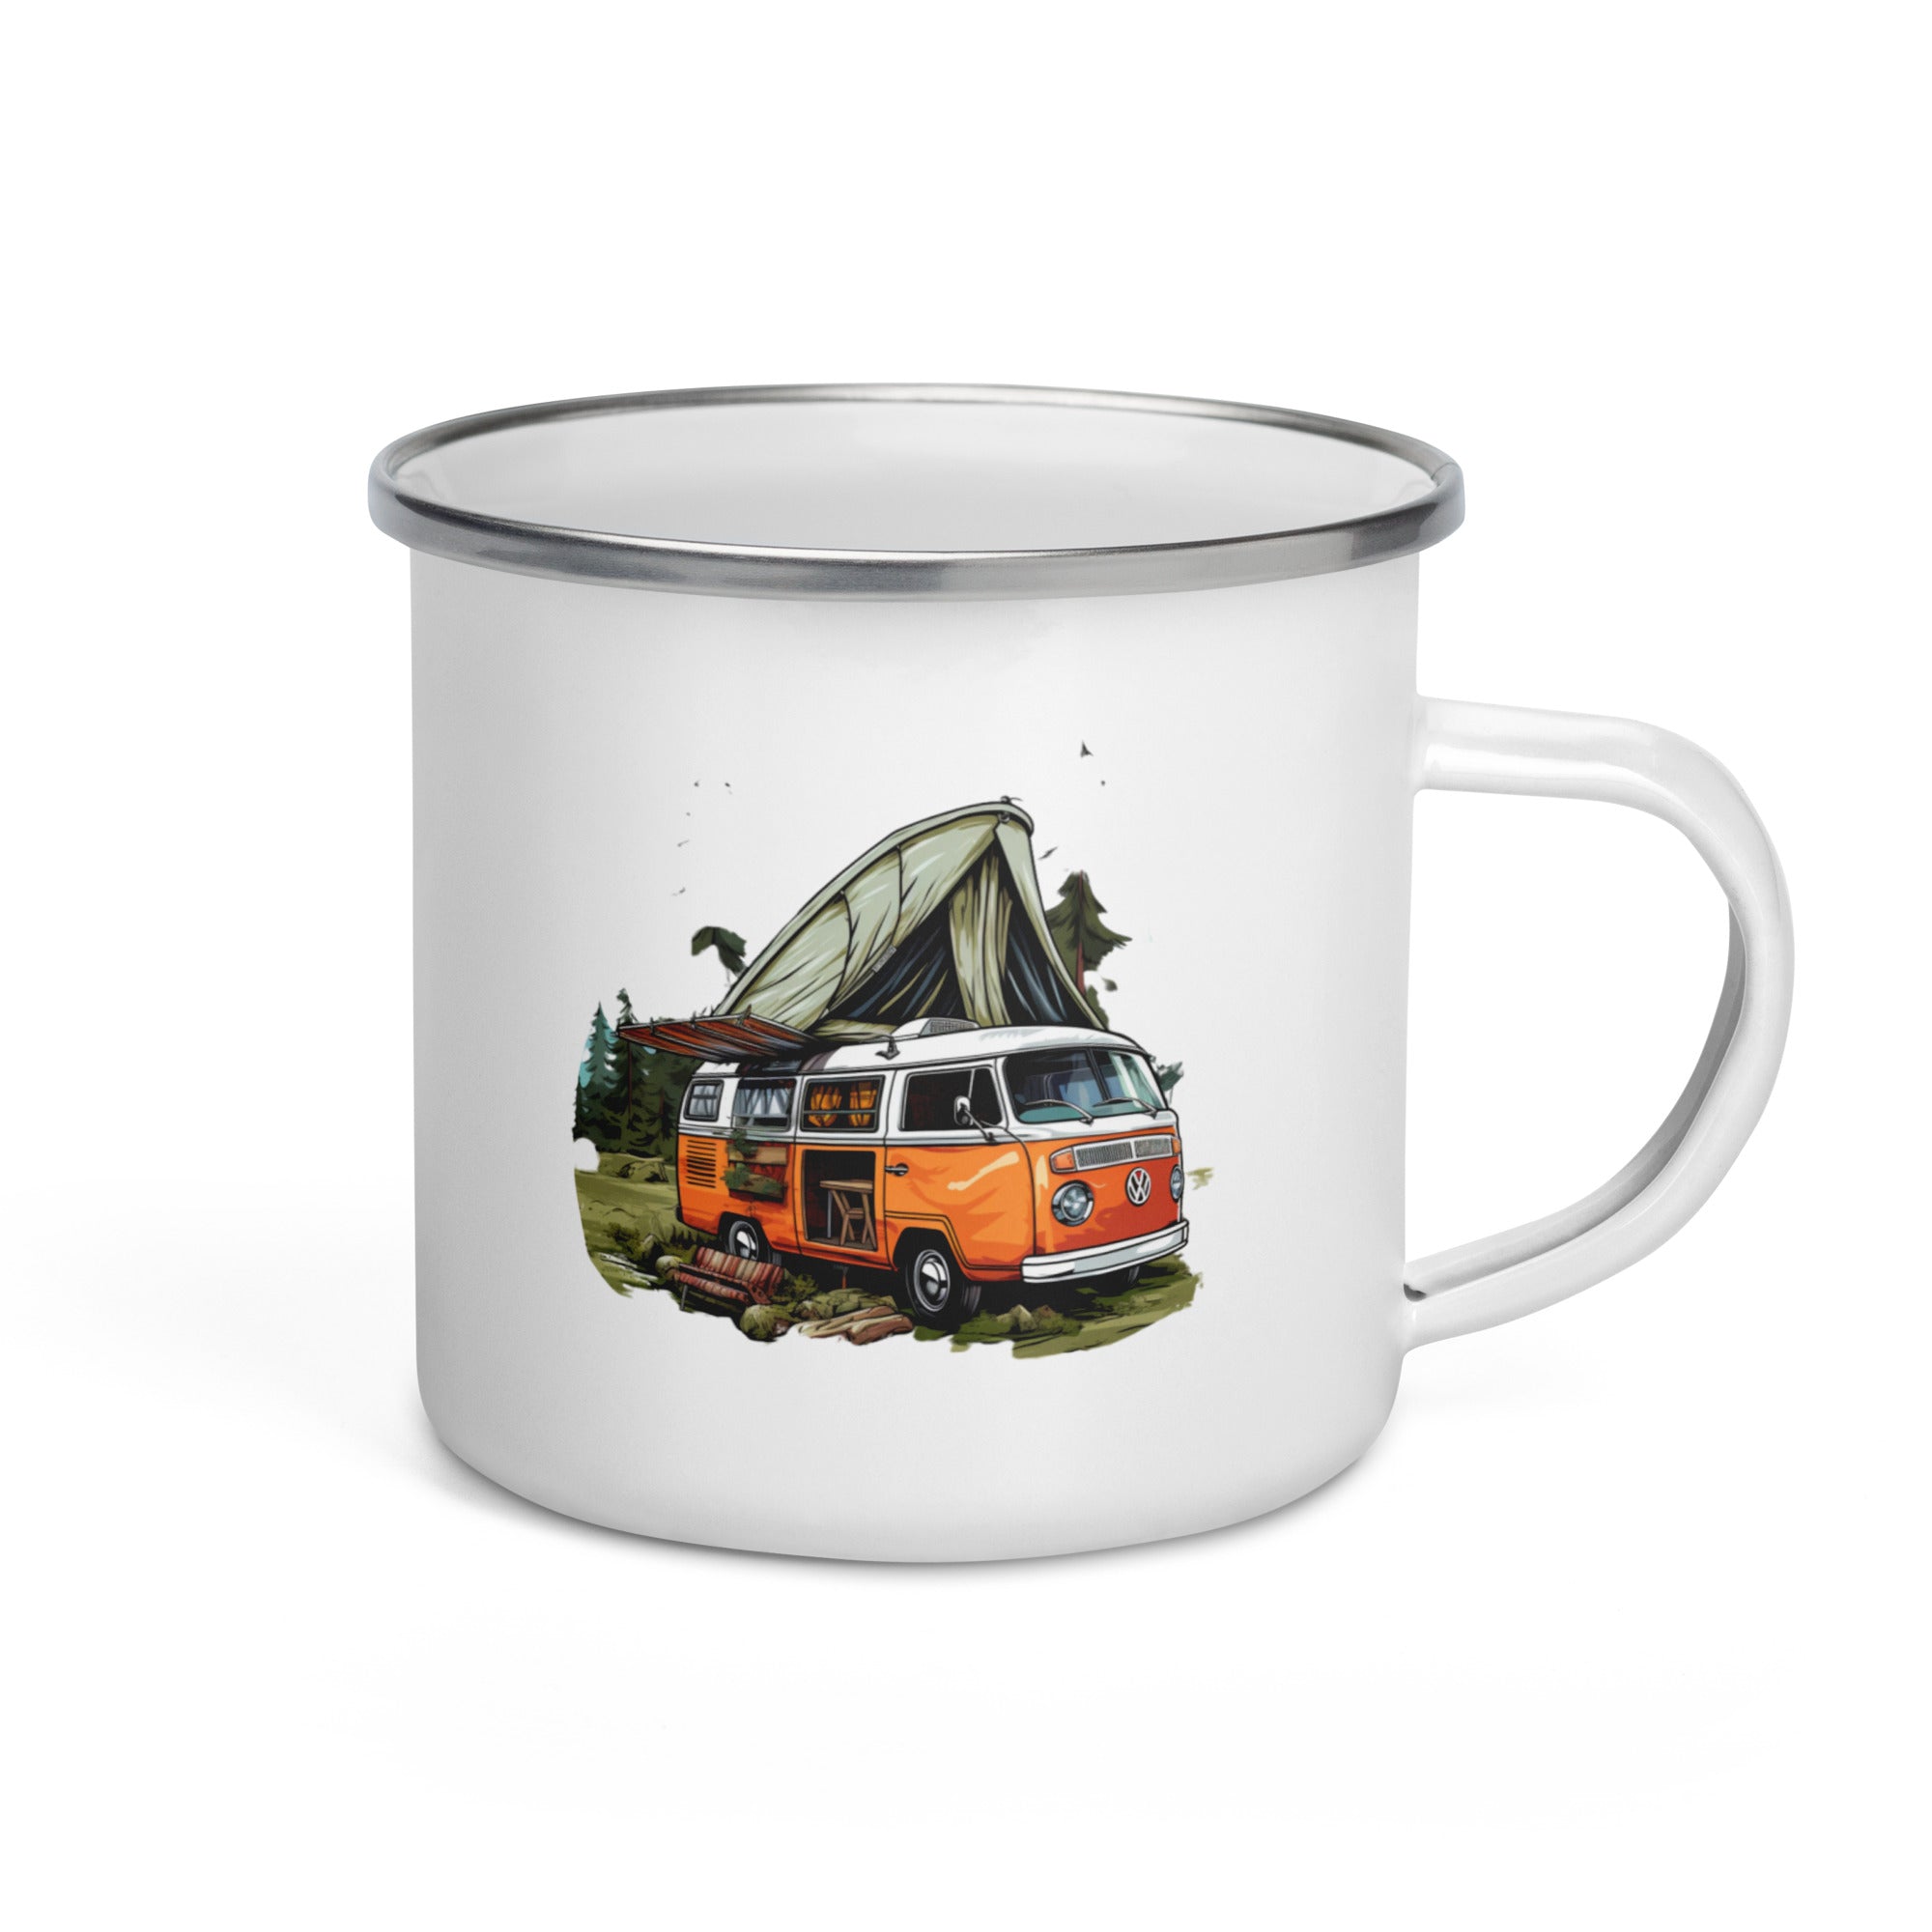 Enamel Mug- Vintage Camping Car 02